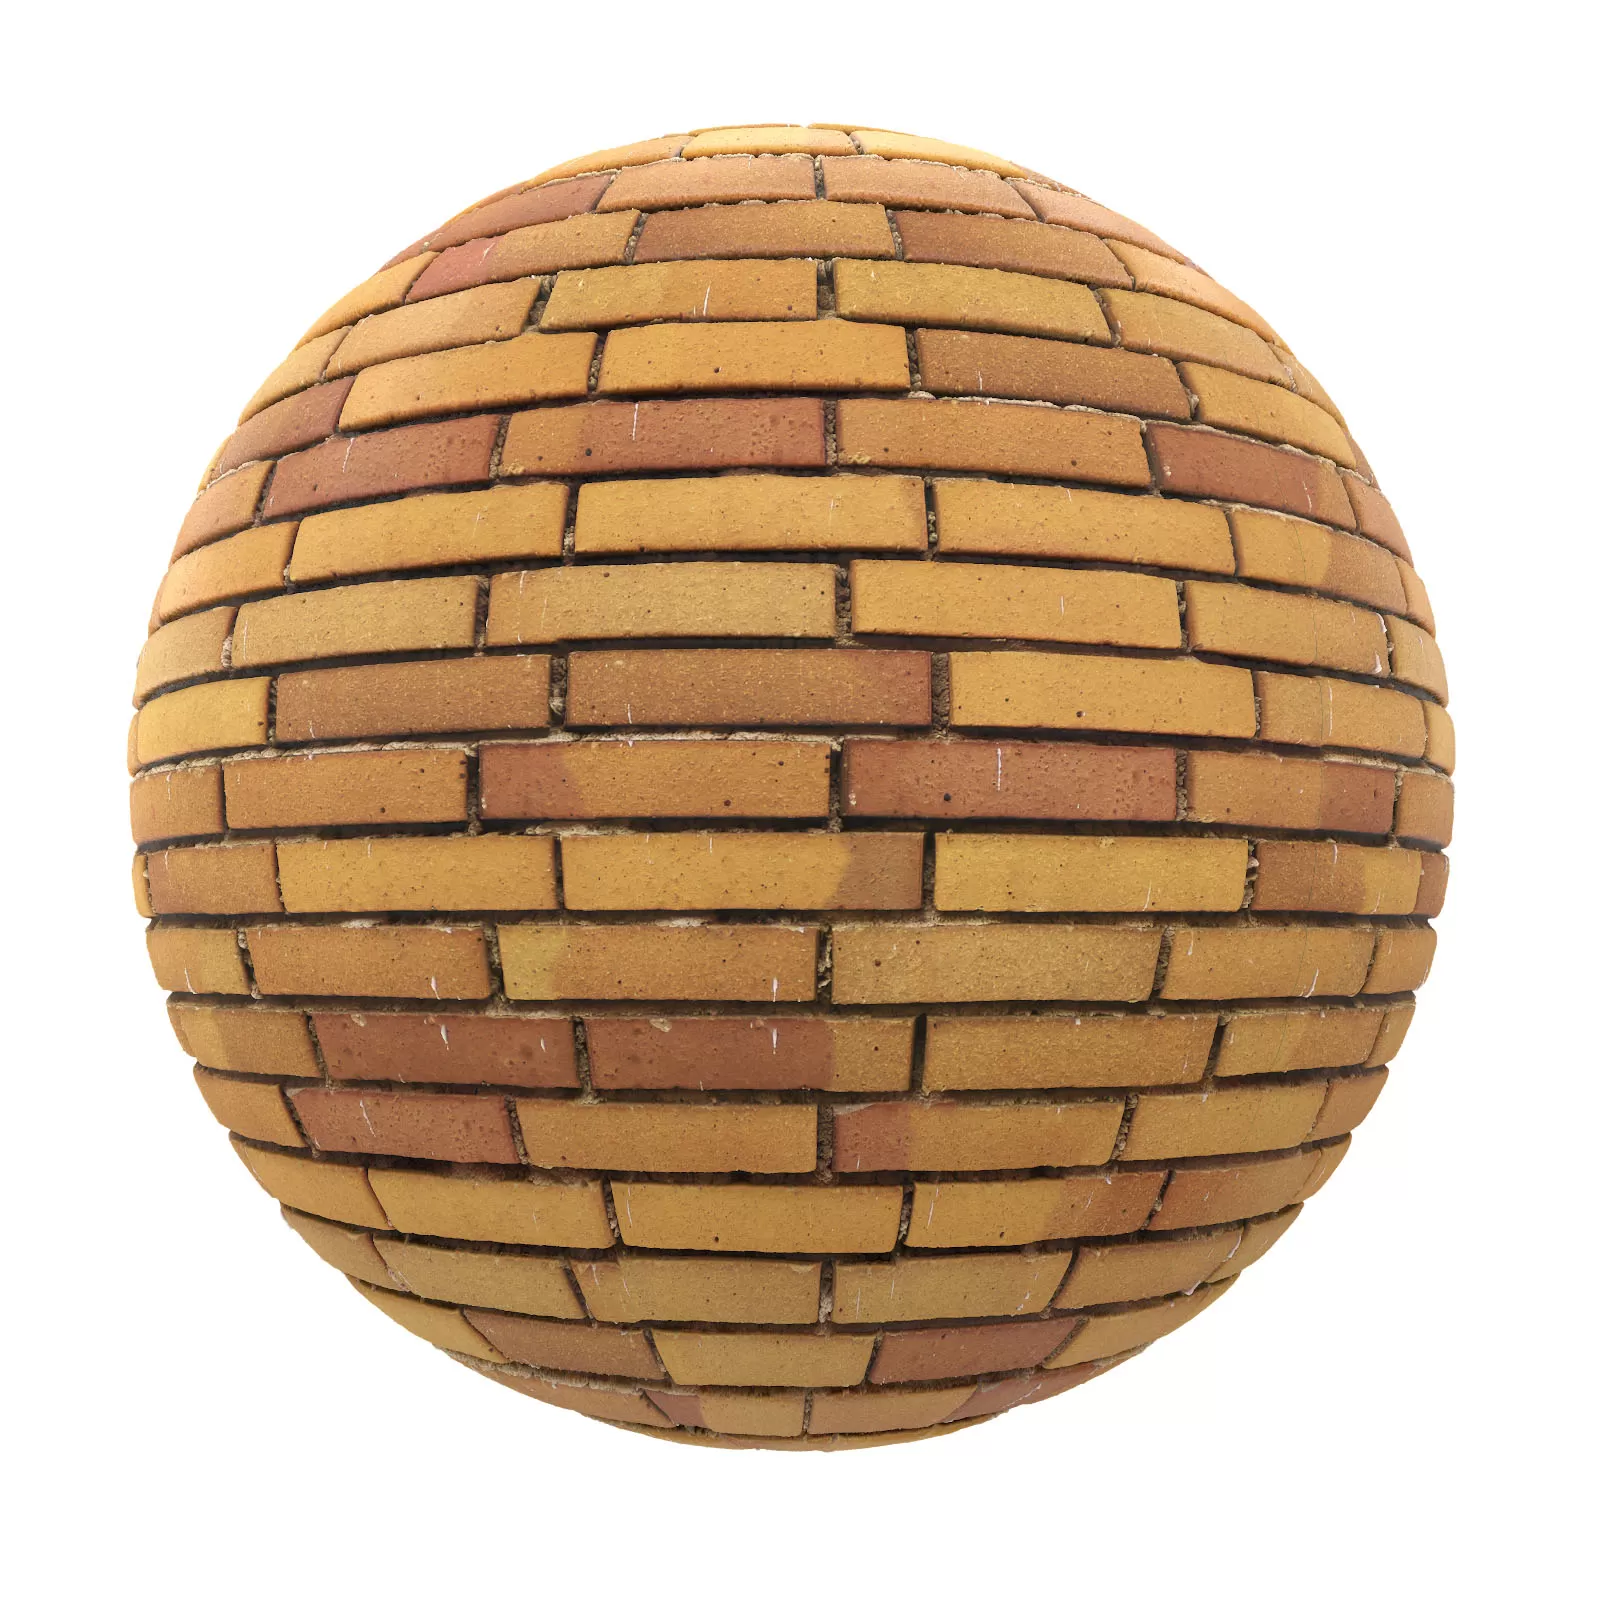 PBR CGAXIS TEXTURES – BRICK – Yellow Brick Wall 8